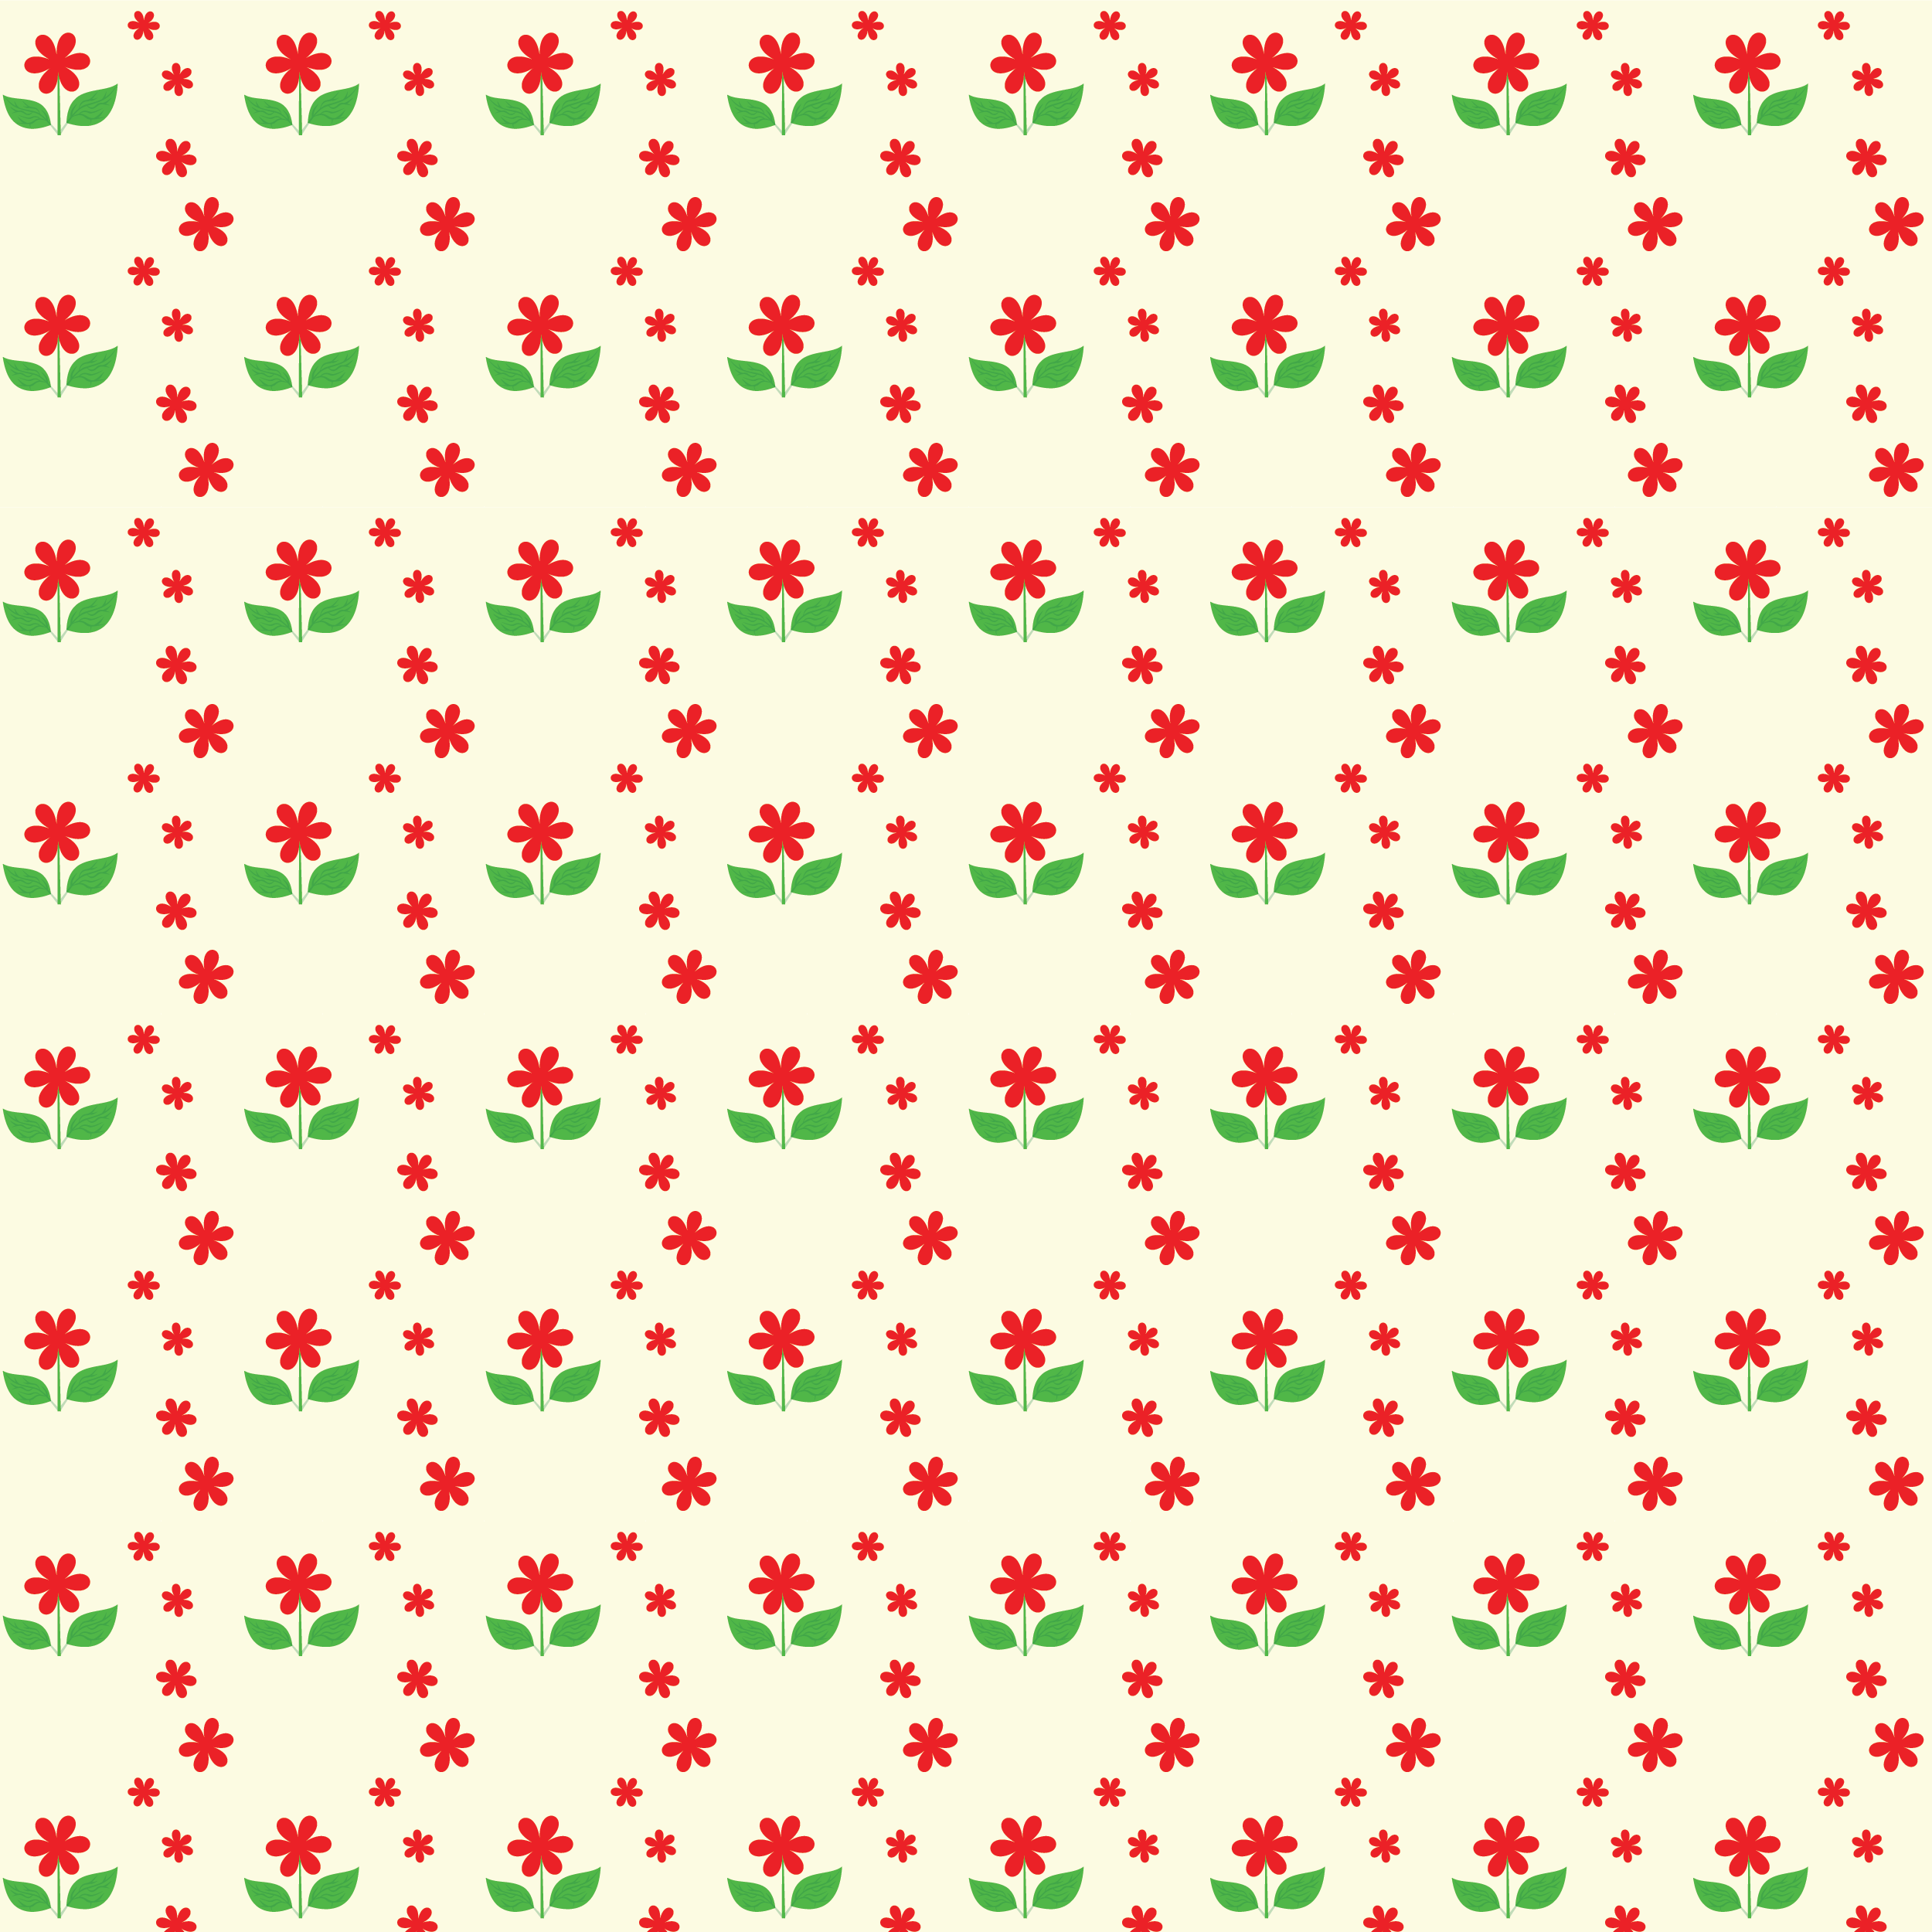 壁紙 背景イラスト 花の模様 柄 パターン No 060 かわいい花 赤